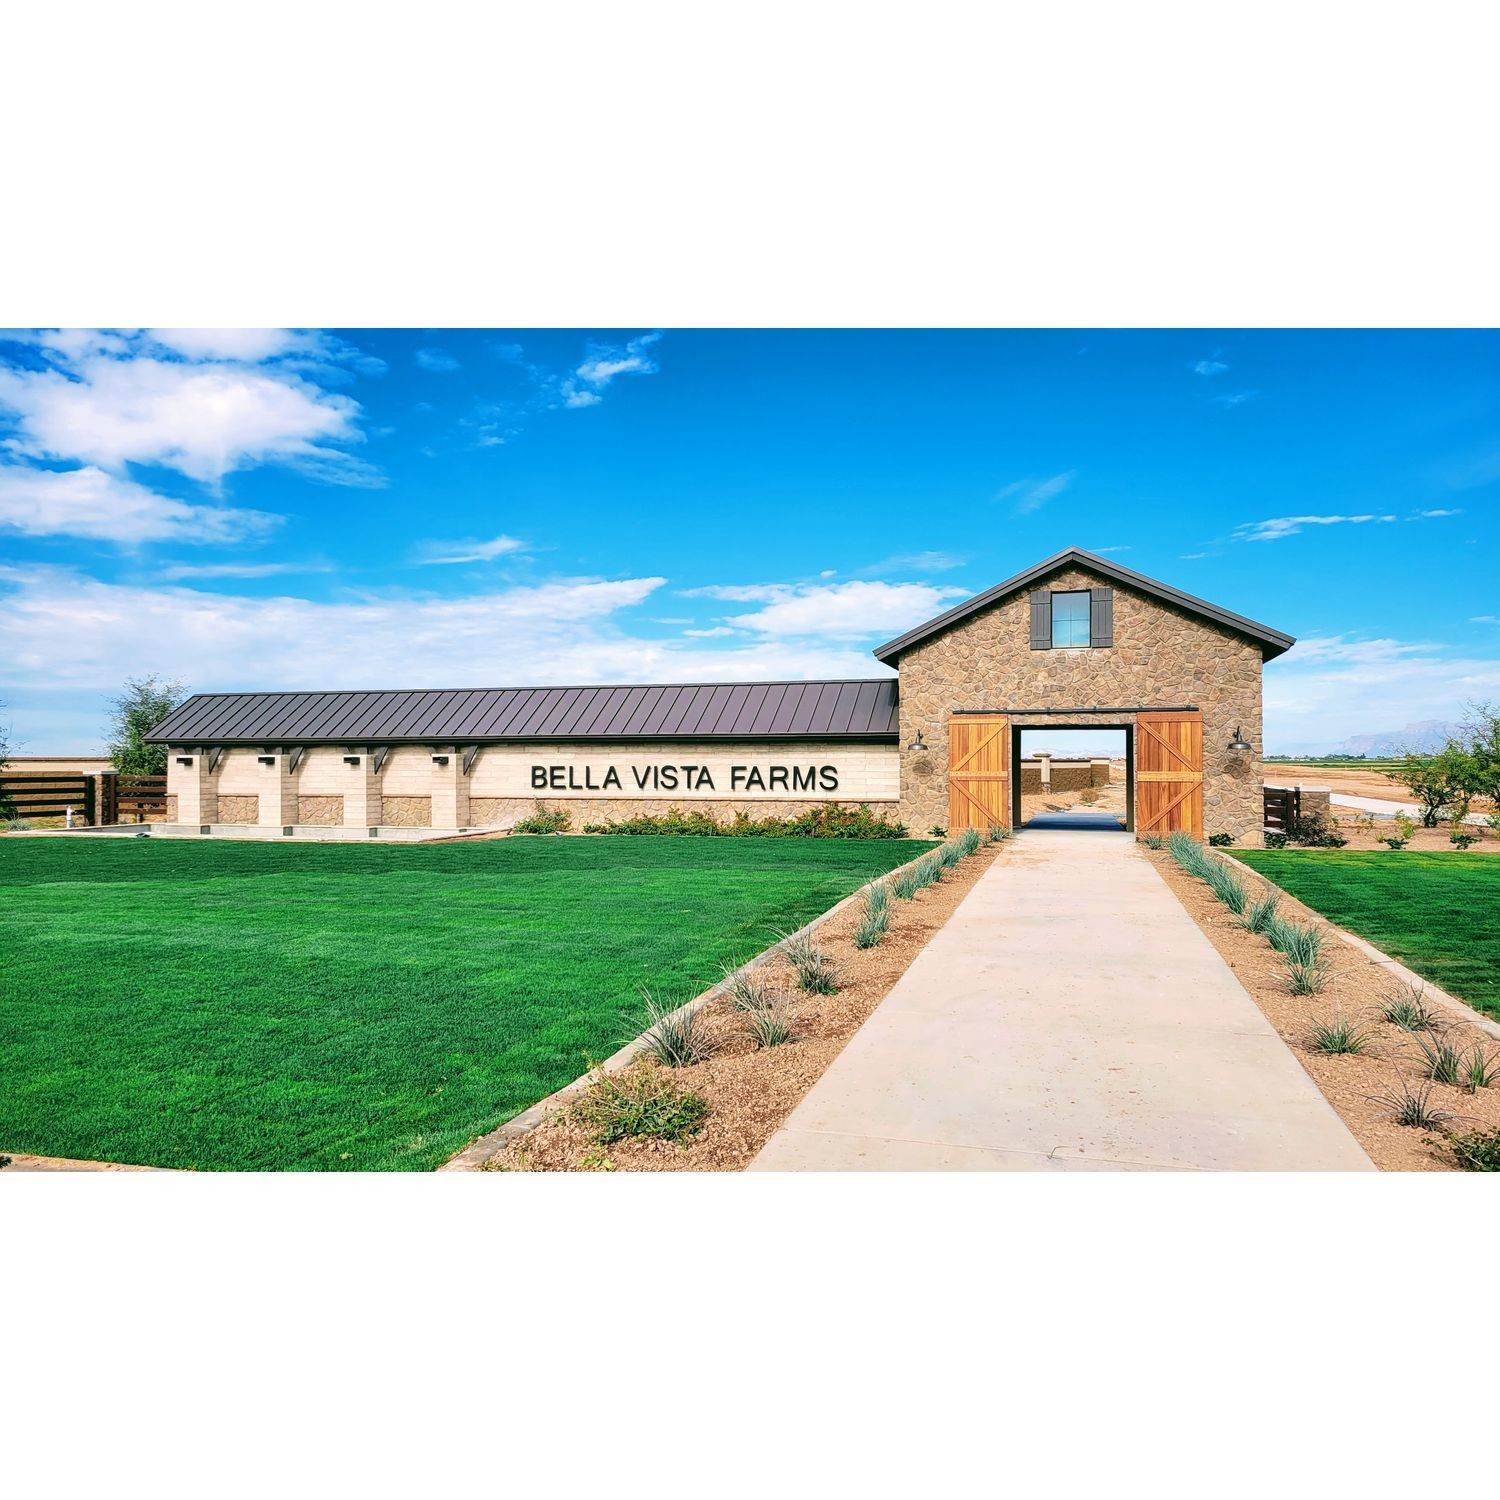 Bella Vista Farms building at 6061 South Oxley, Mesa, AZ 85212